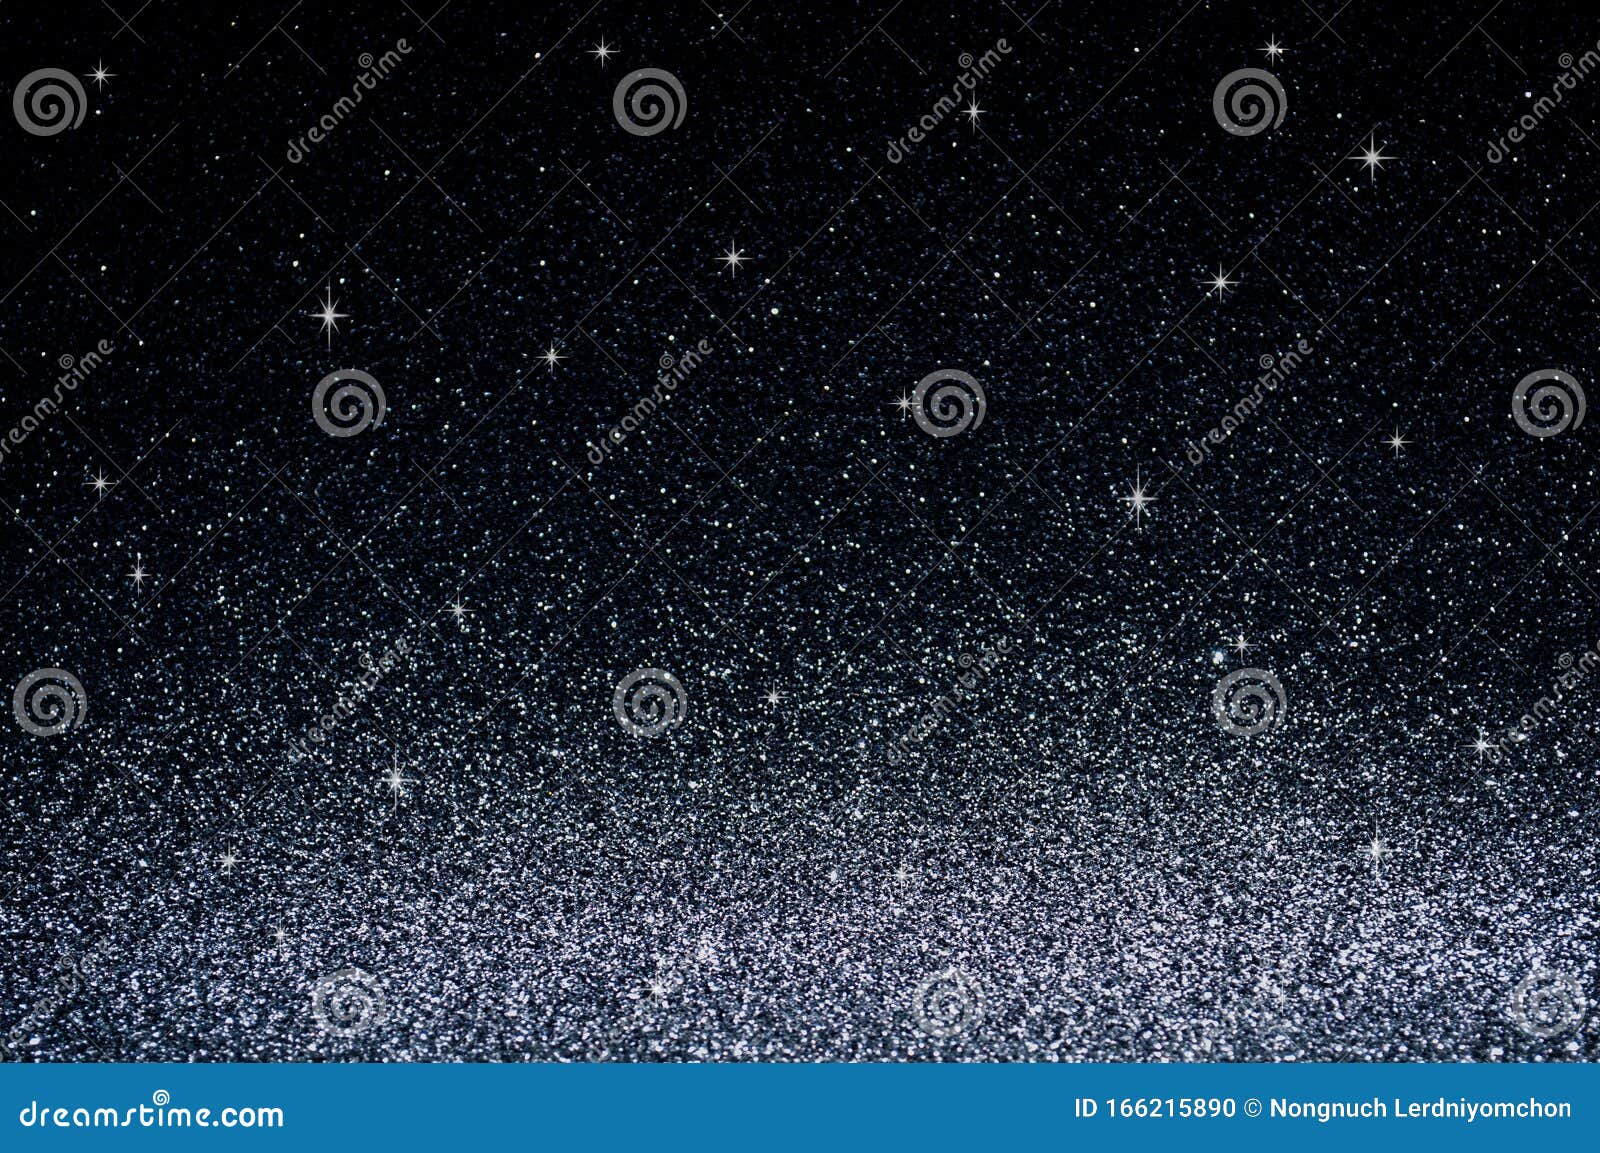 Schwarzer Himmel Mit Sternenhimmel Abstrakte Silberleuchten Glitzernde Weihnachtslichter Saisongrusse Hintergrunde Stockfoto Bild Von Glitzernde Himmel